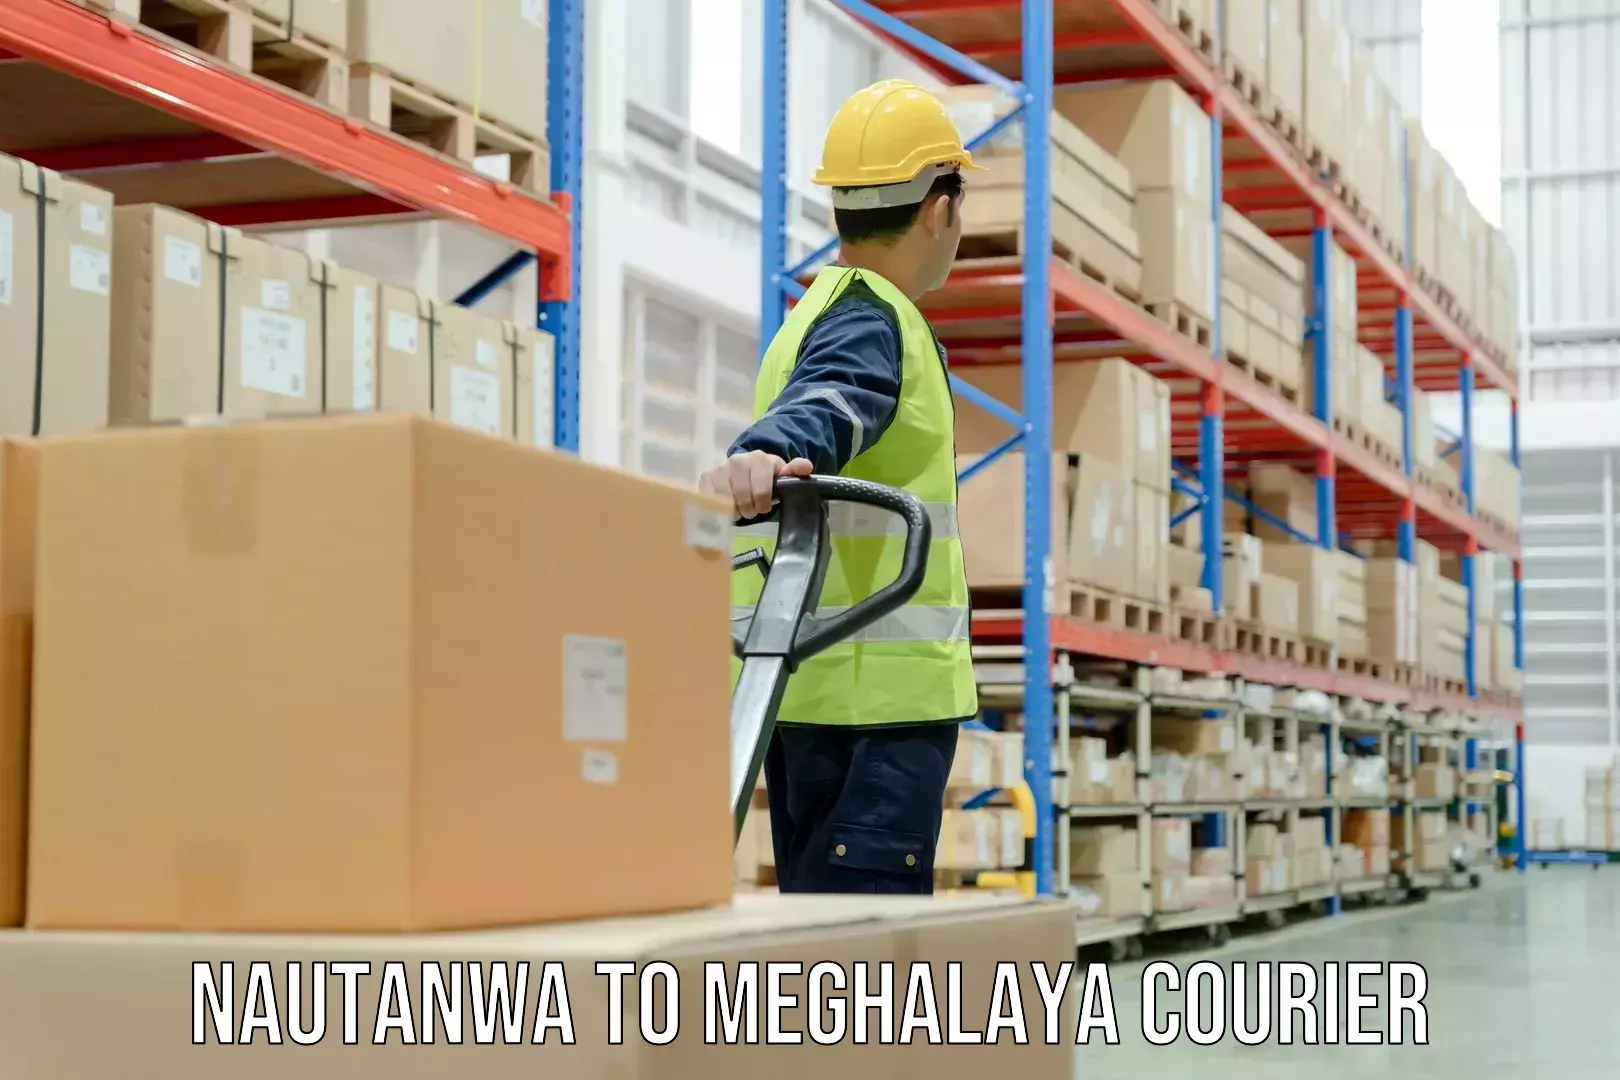 Customer-centric shipping Nautanwa to Meghalaya